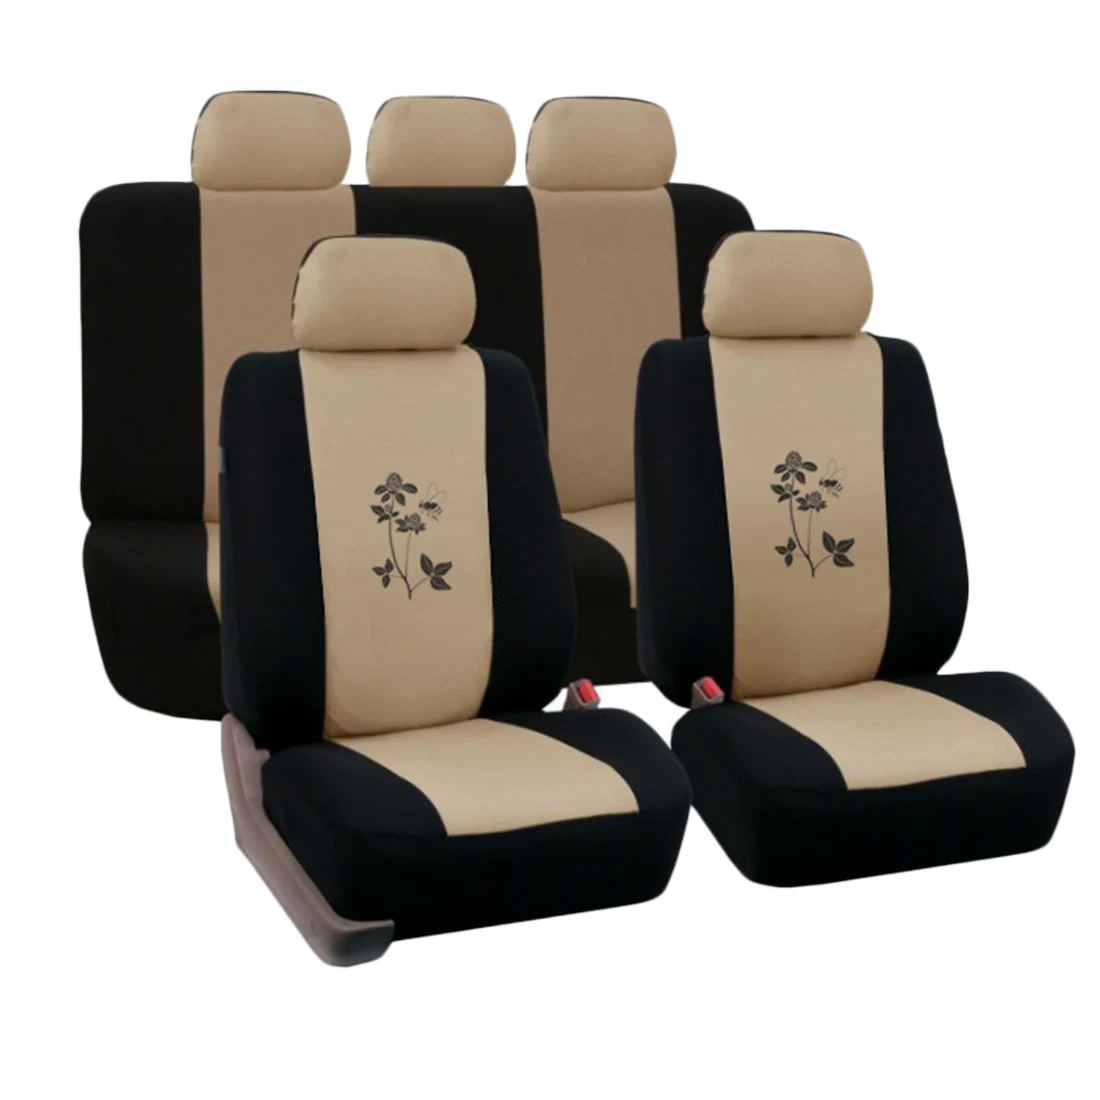 Dewtreelita универсальный протектор для автомобильного сиденья с принтом, чехол для автомобильного сиденья, аксессуары для интерьера, синий, серый цвет, для Ford Focus 2, автостайлинг